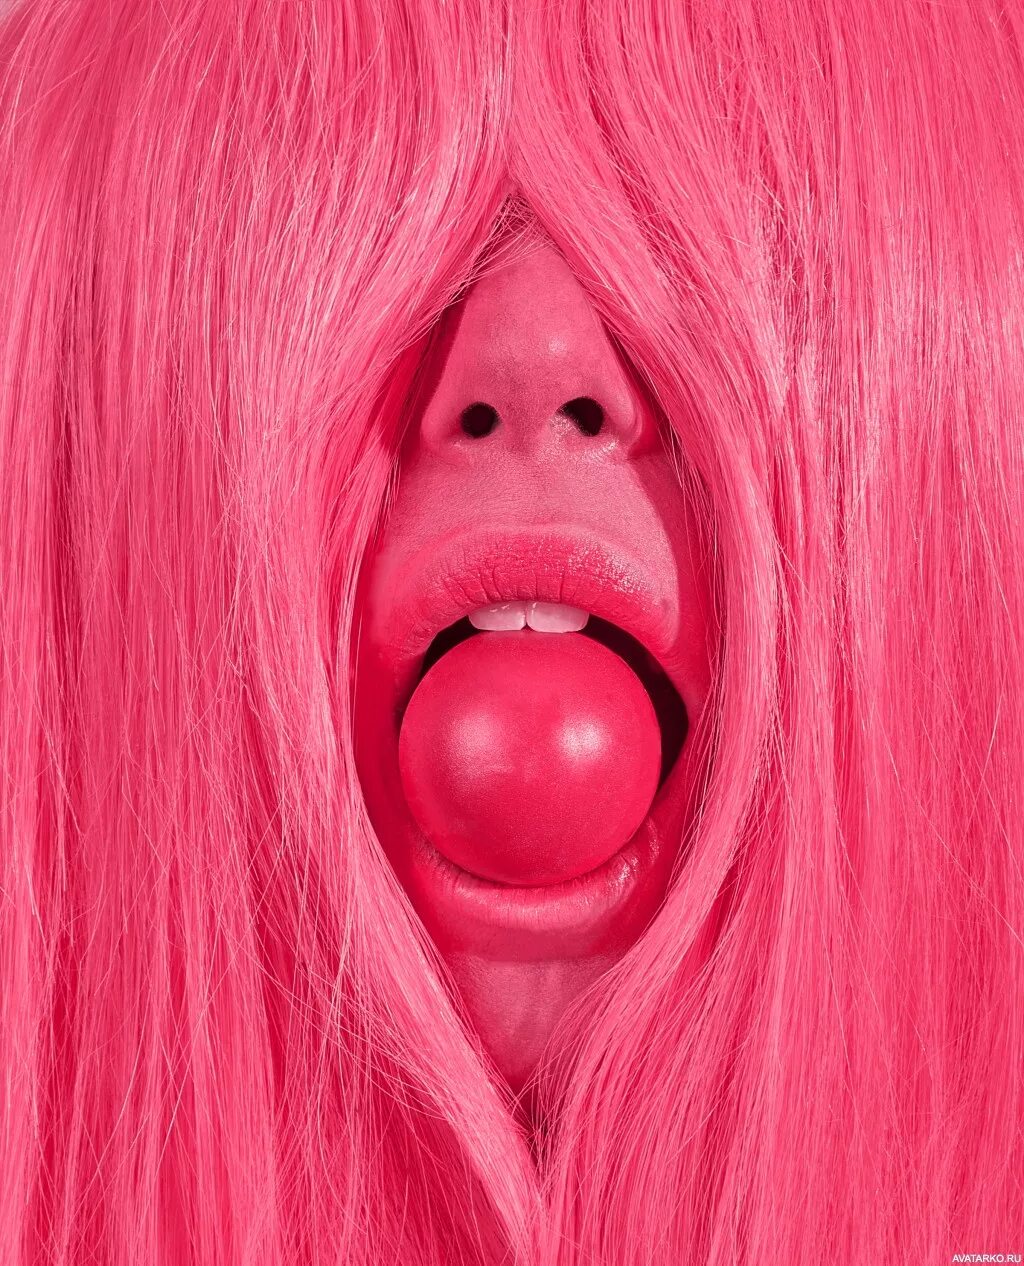 Кляп розовый шарик. Девушка с шар ком во рту.